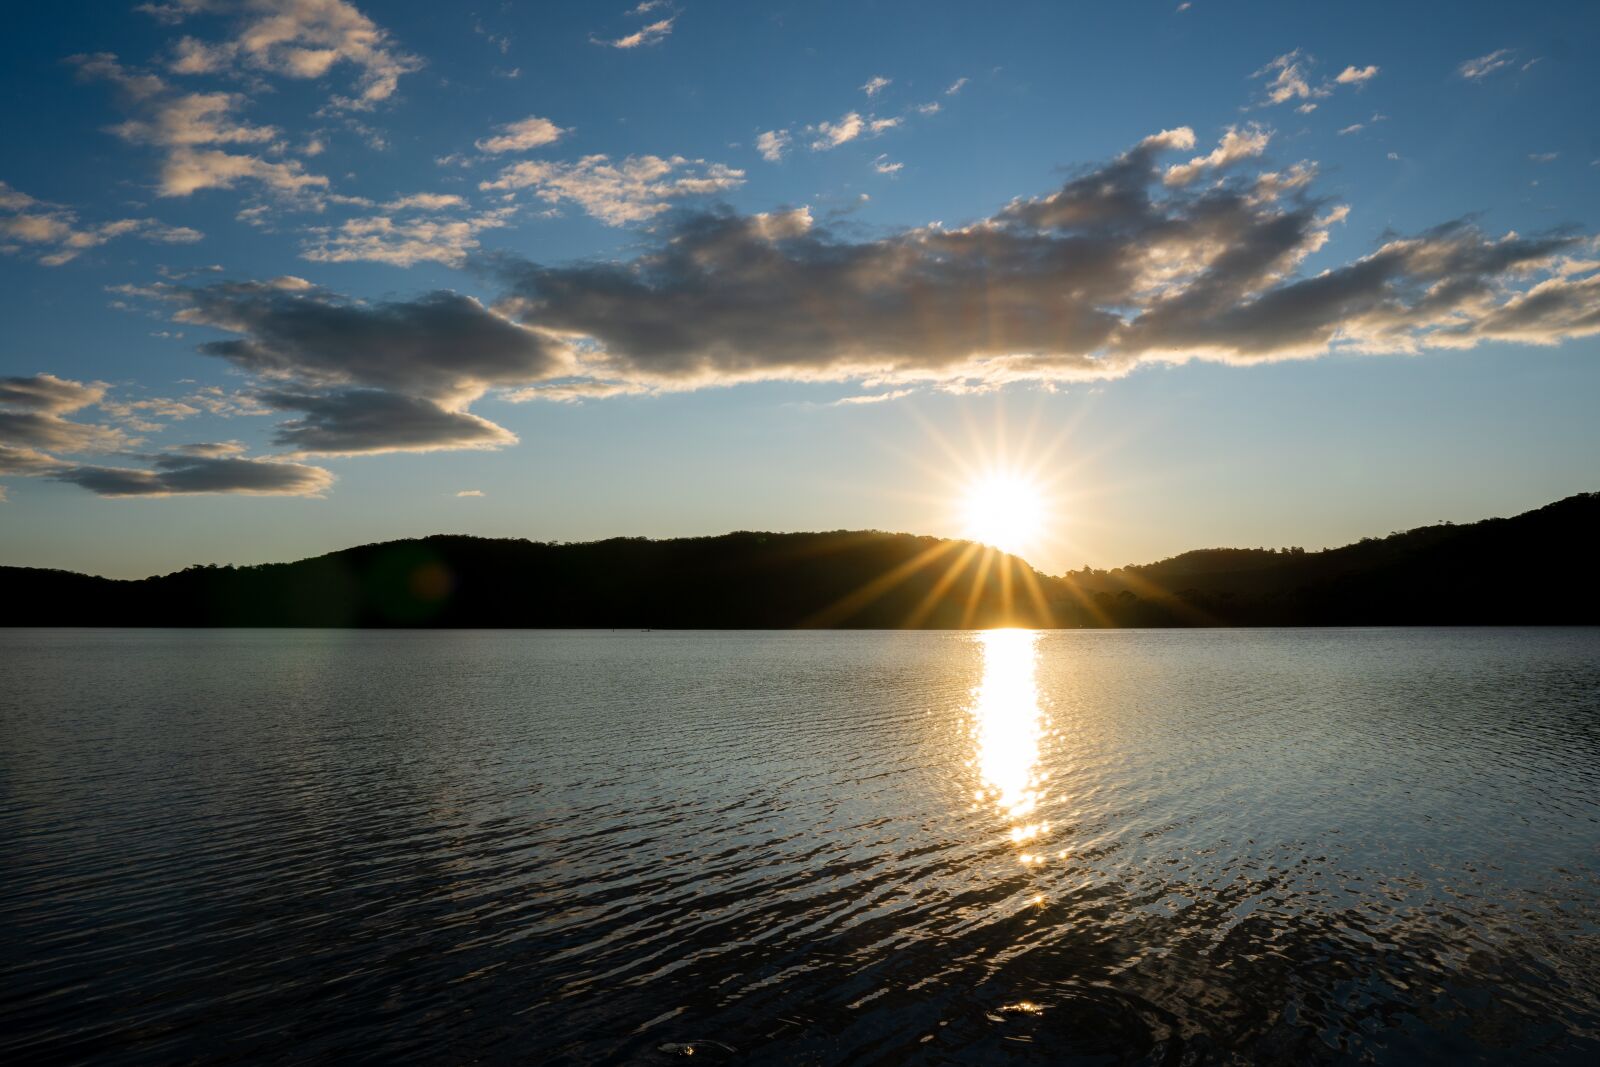 Sony a6300 sample photo. Lake, sunset, sunrise photography